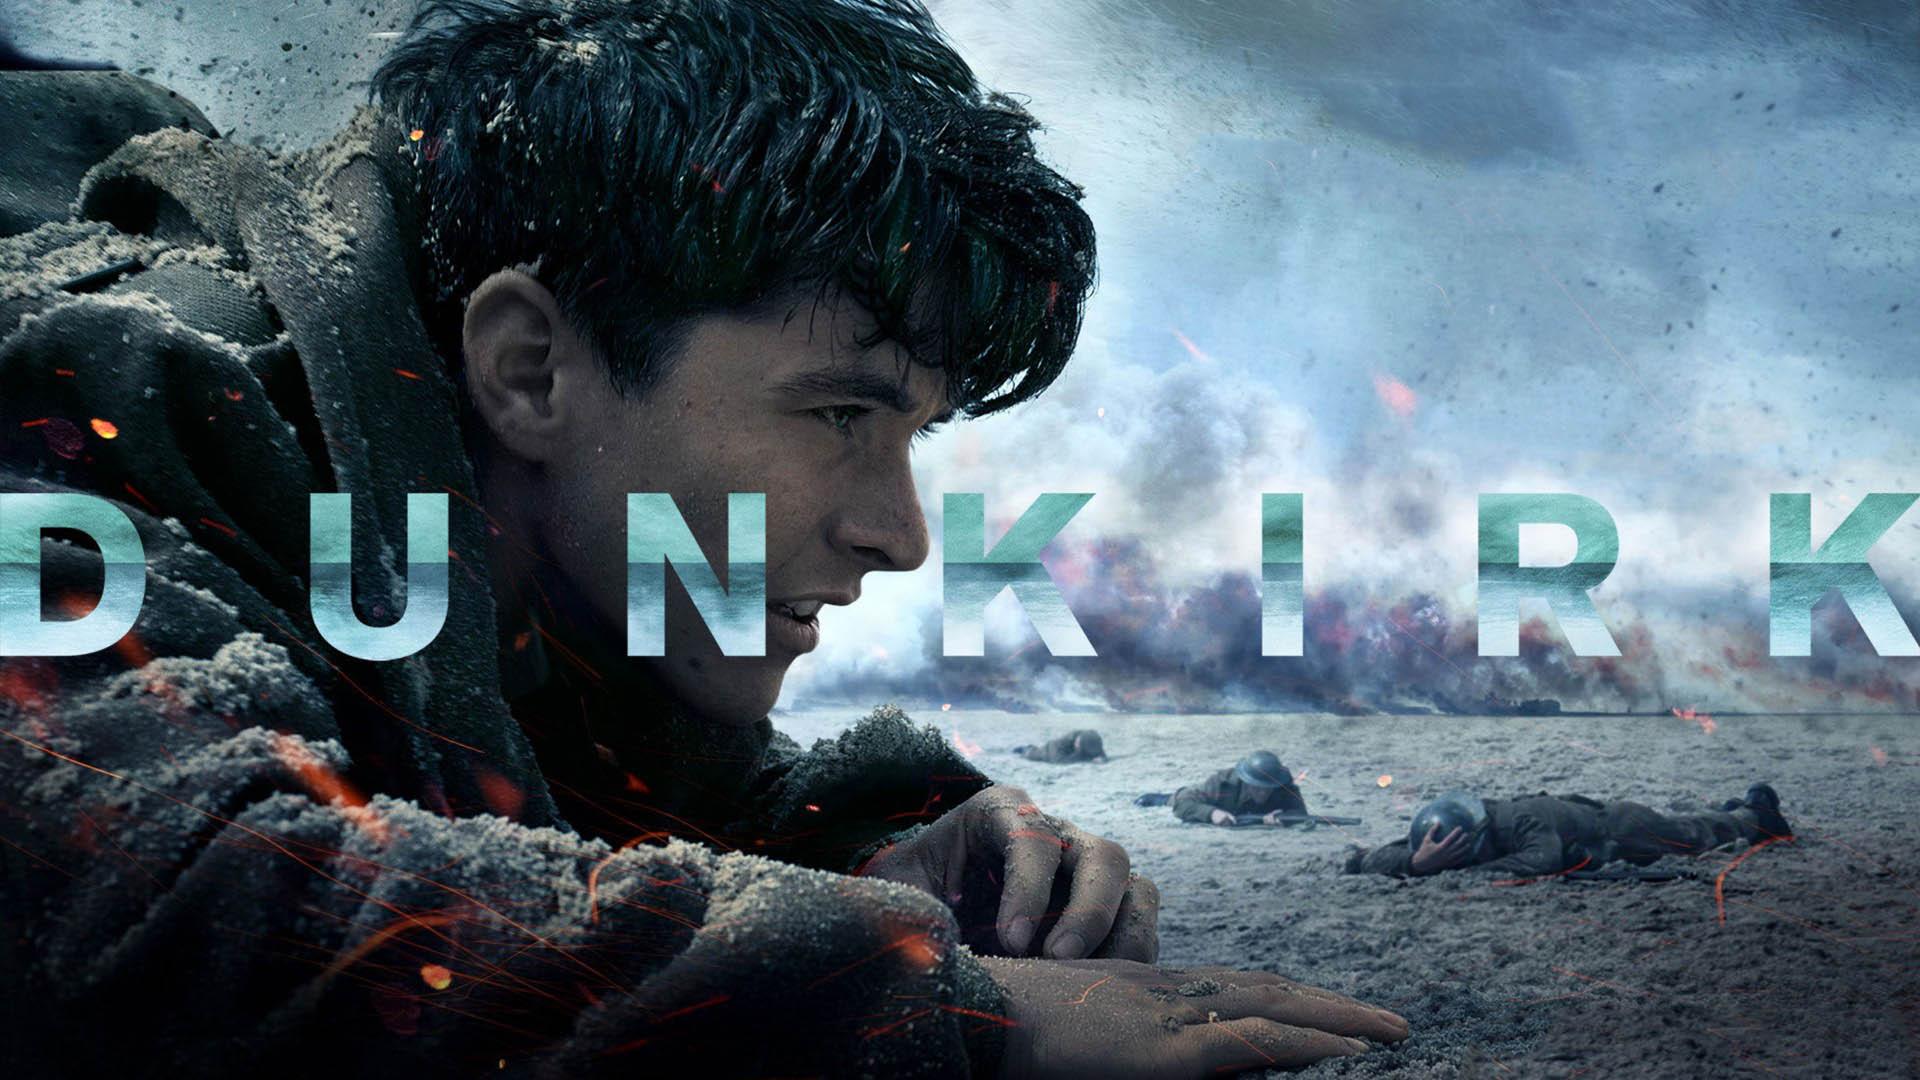 حقایق جالب فیلم Dunkirk - دانکرک